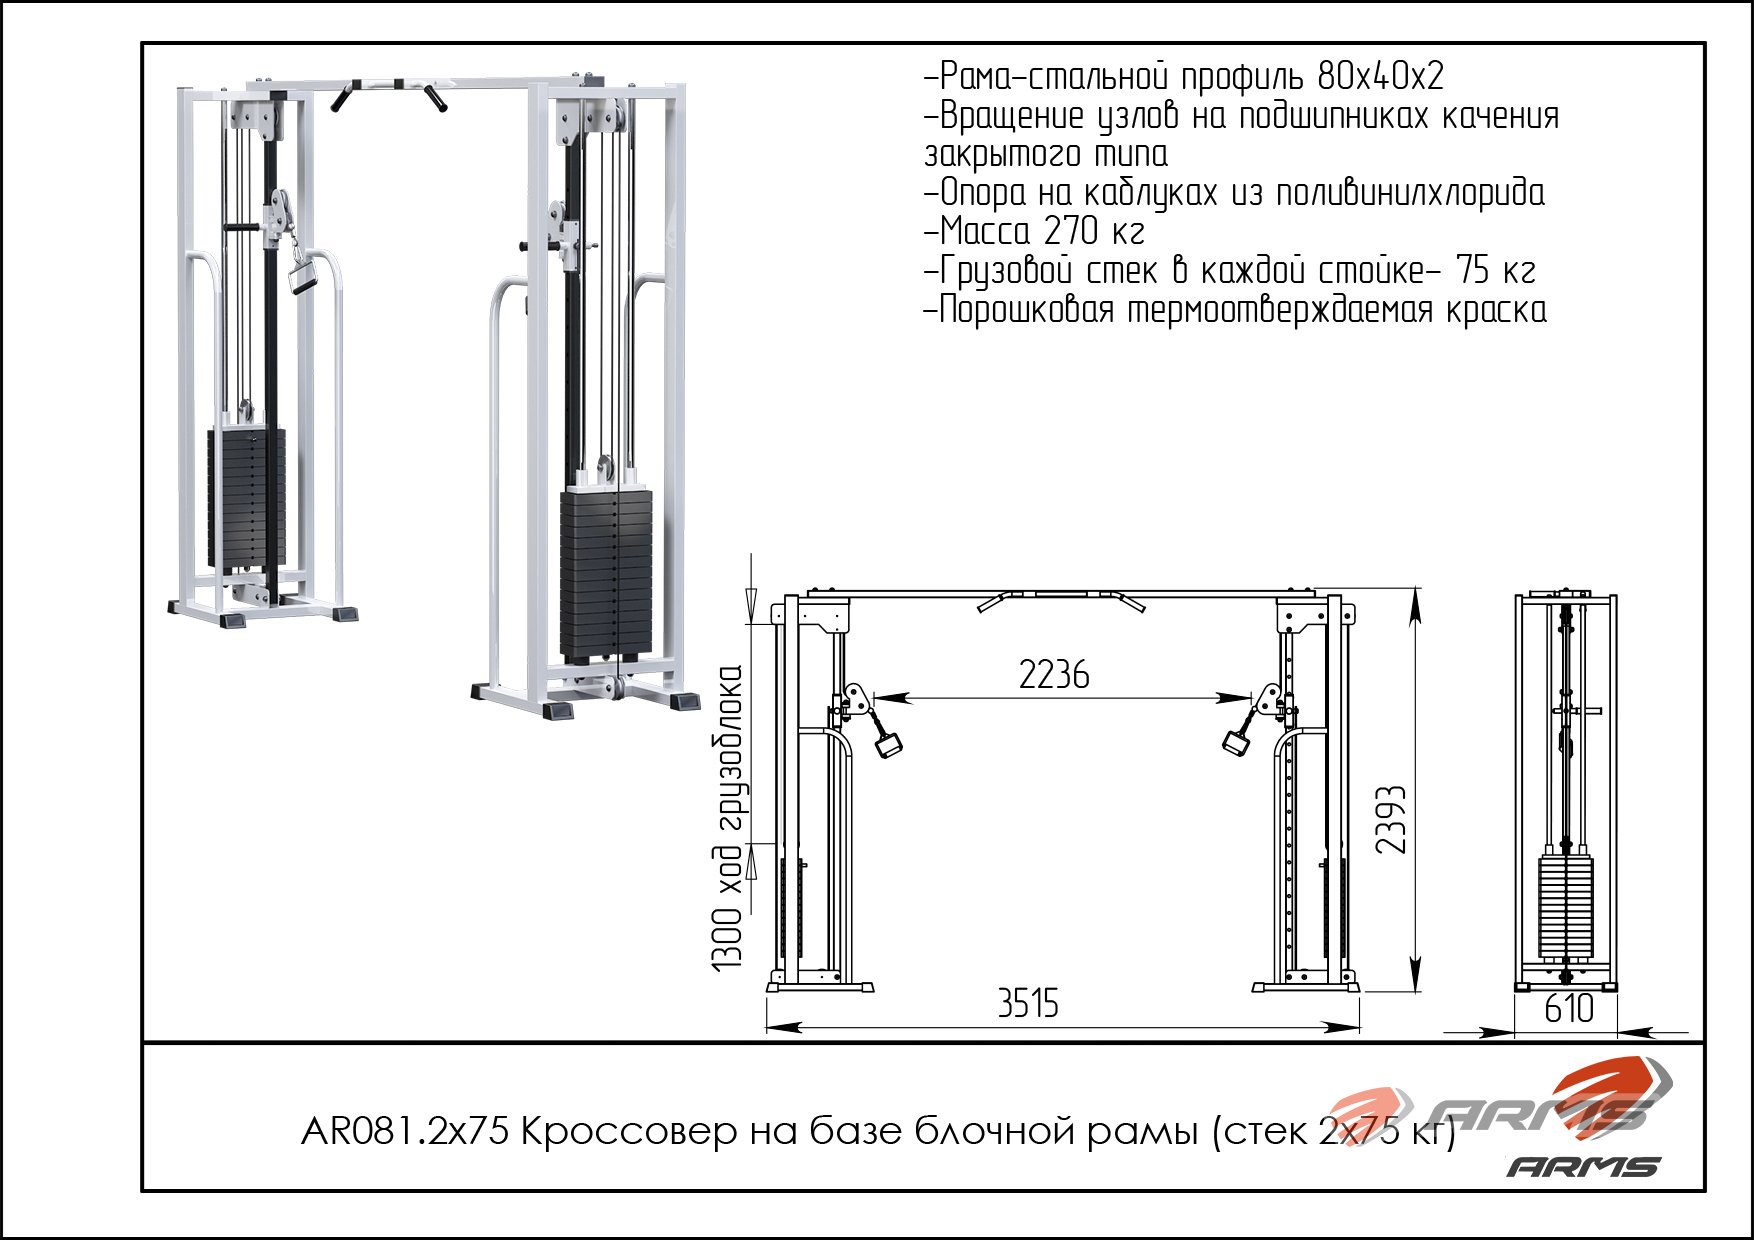 Кроссовер на базе блочной рамы стек 2 х 75 кг ARMS AR081.2х75